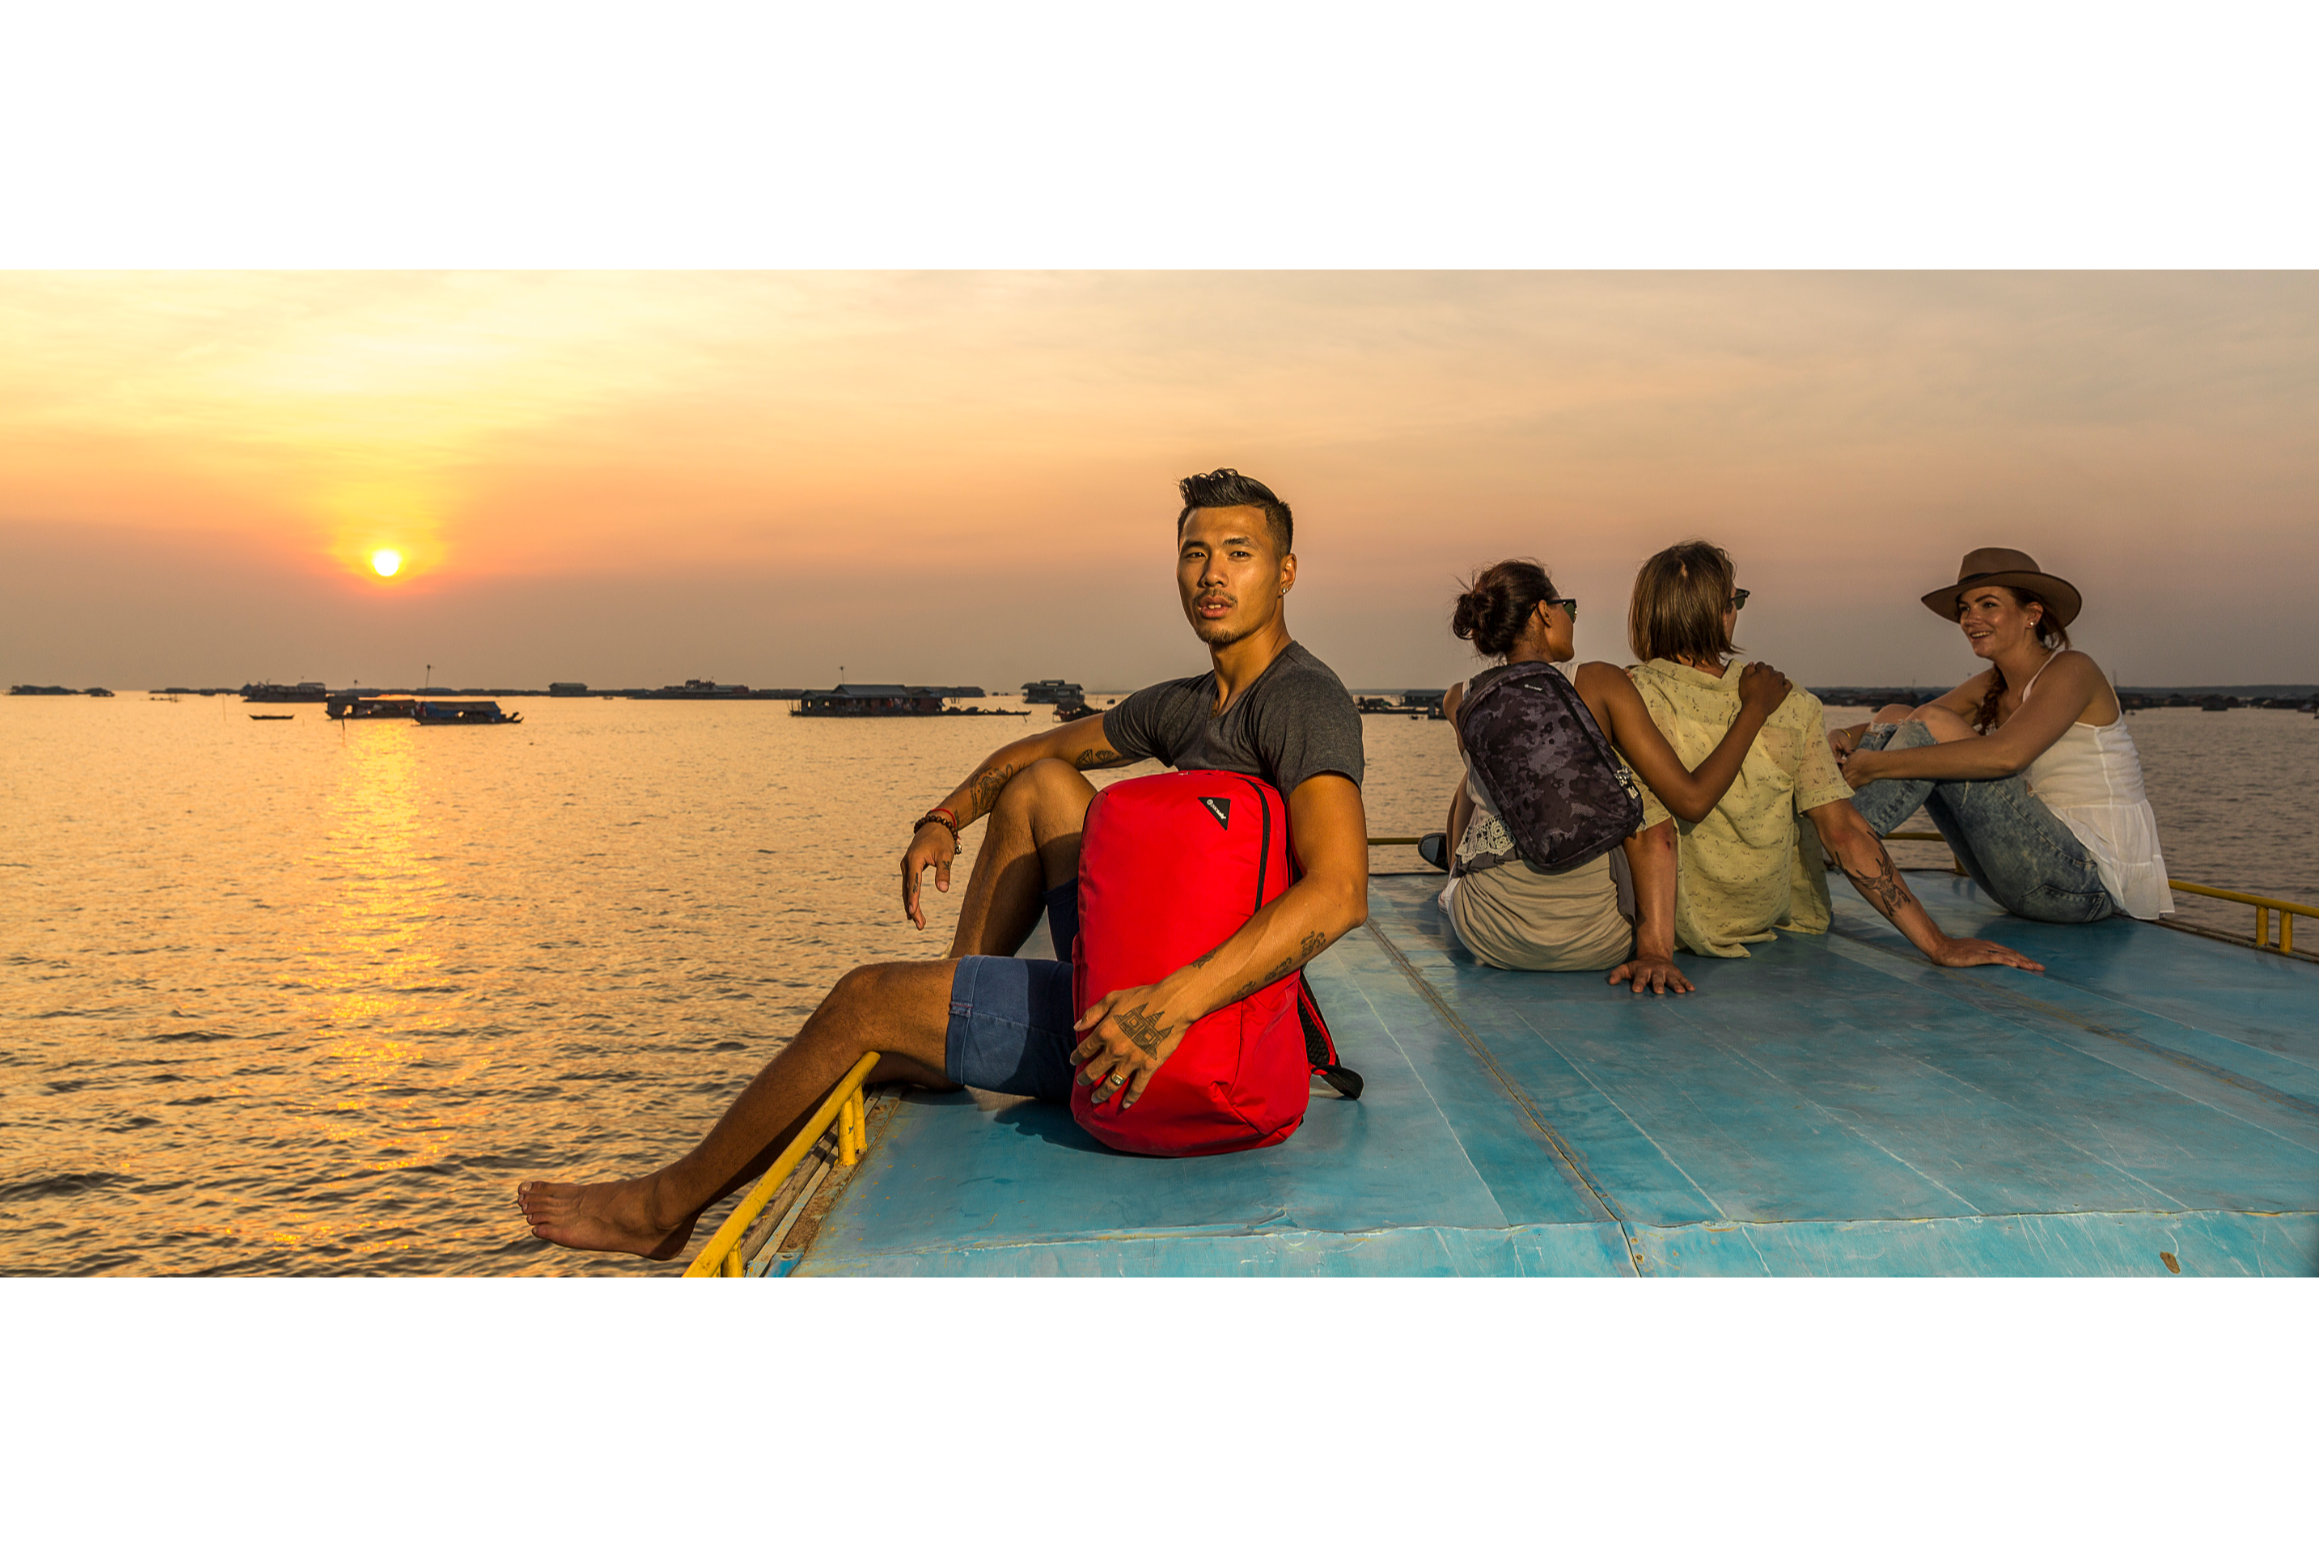 Pacsafe bags photoshoot on Tonle Sap Lake - Siem Reap, Cambodia